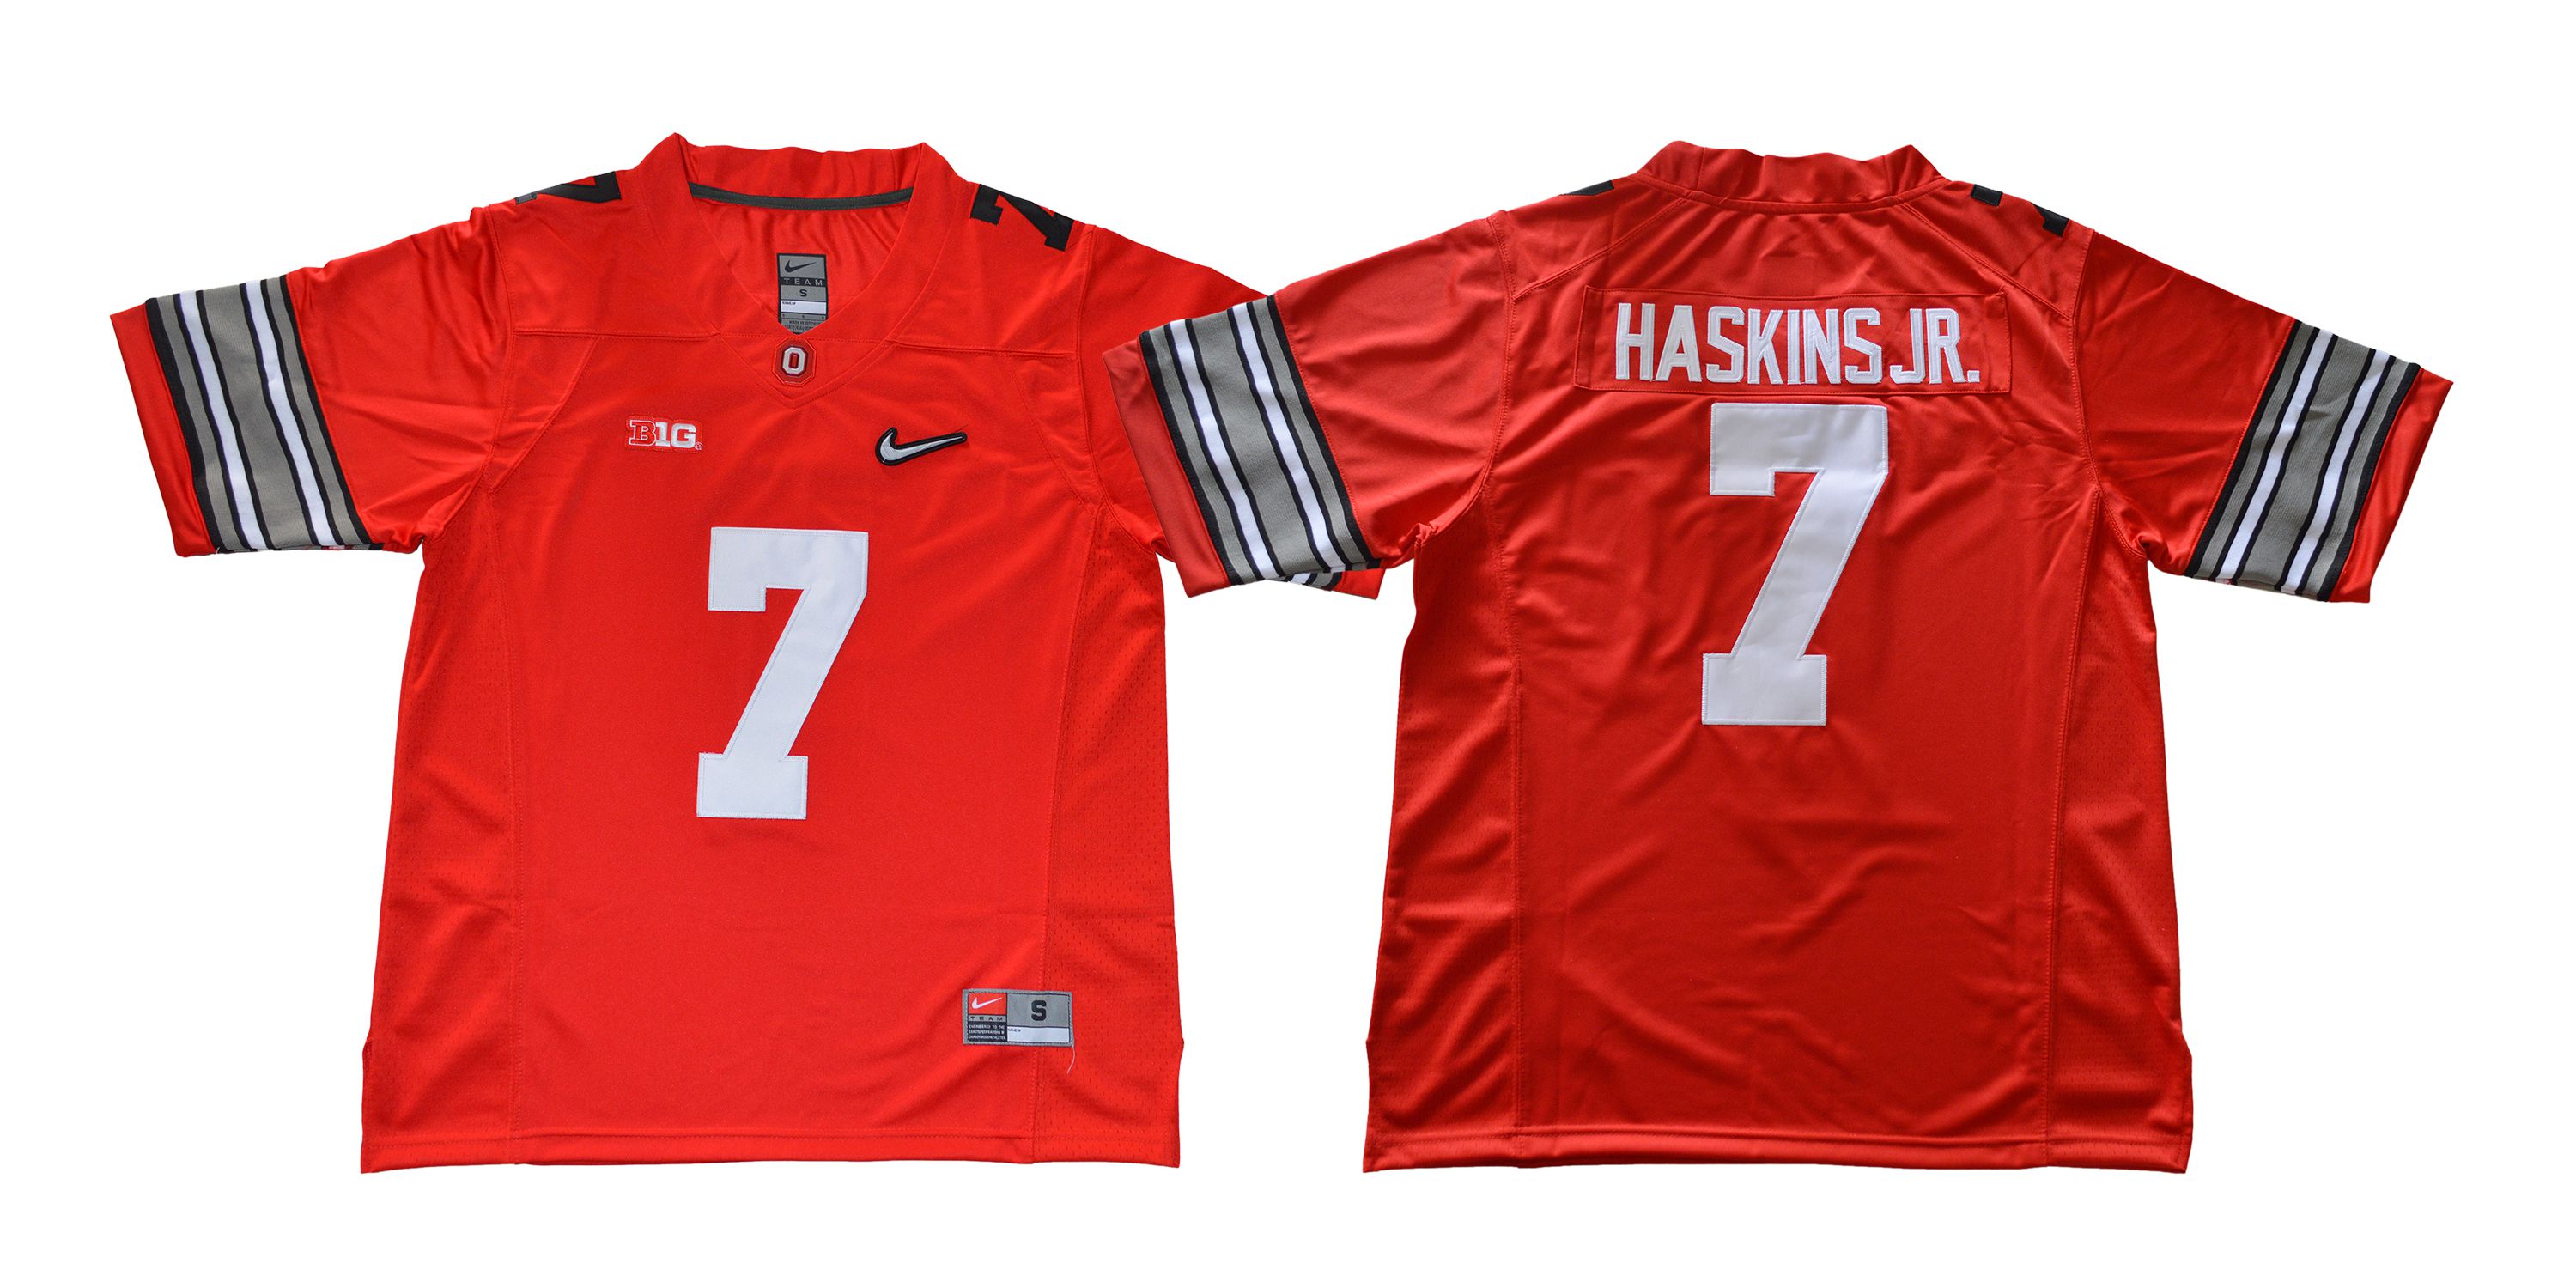 Men Ohio State Buckeyes #7 Haskins jr Diamond Red Nike NCAA Jerseys